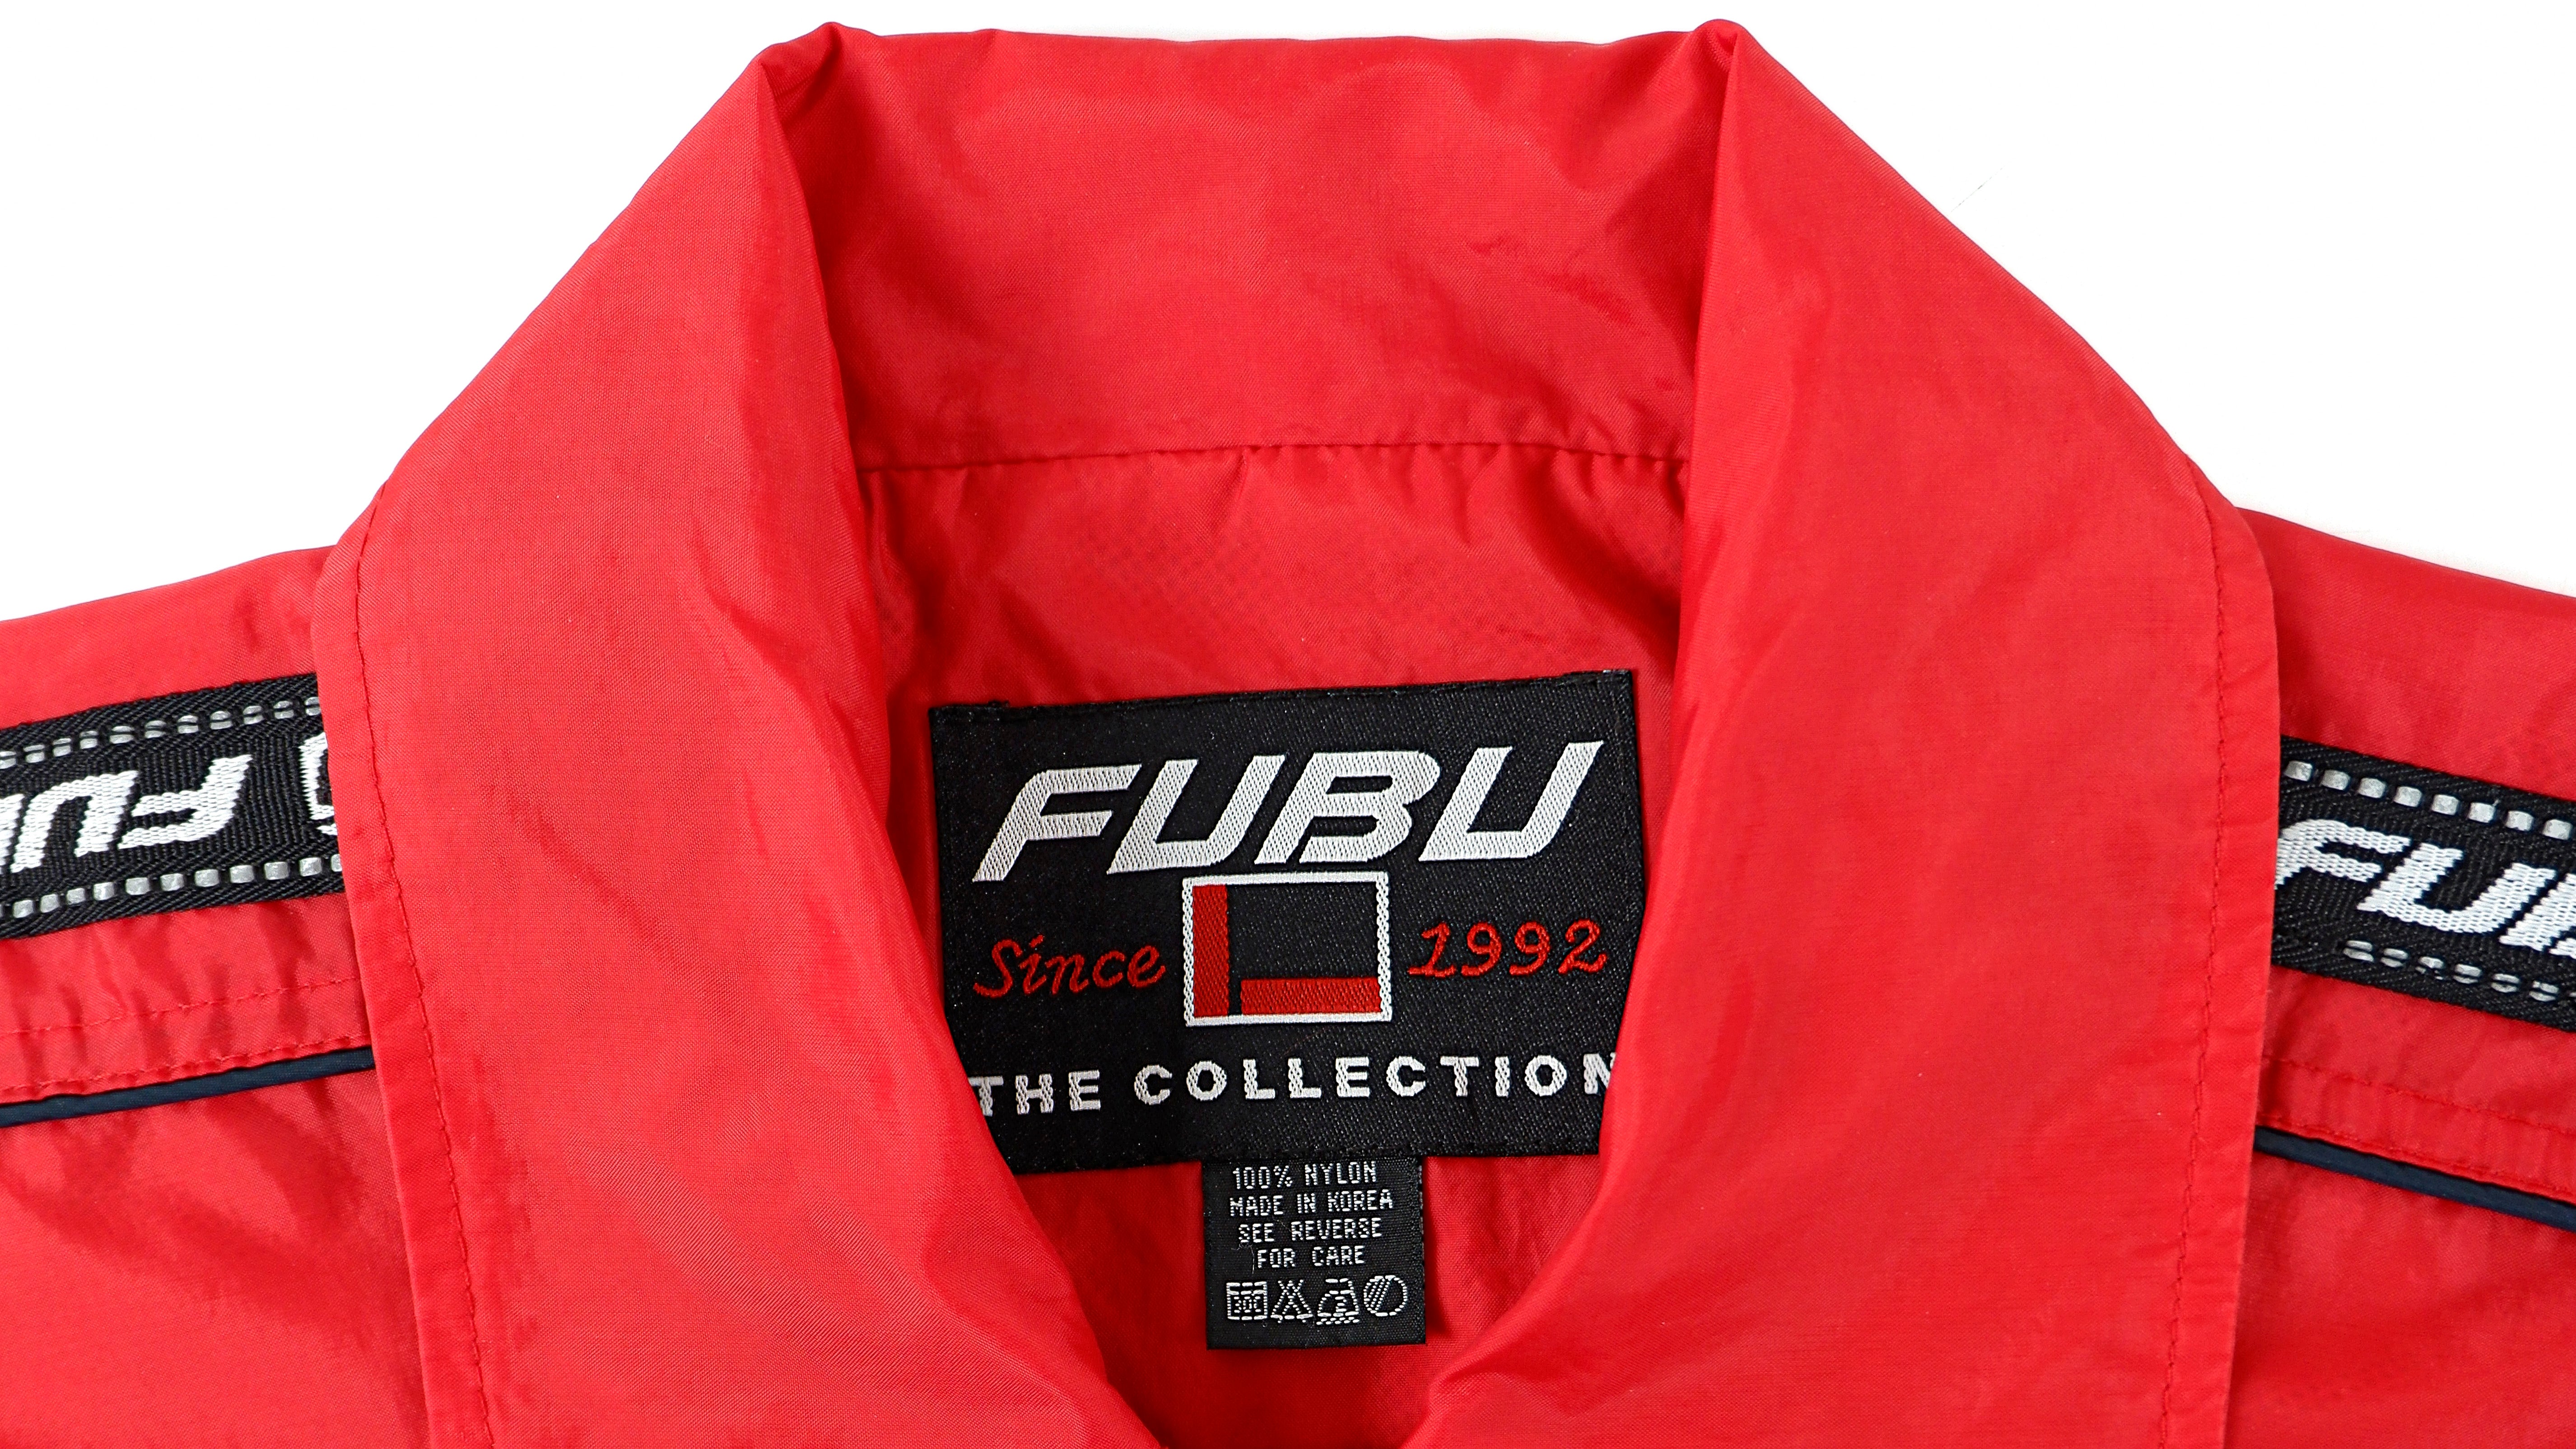 fubu clothing logo